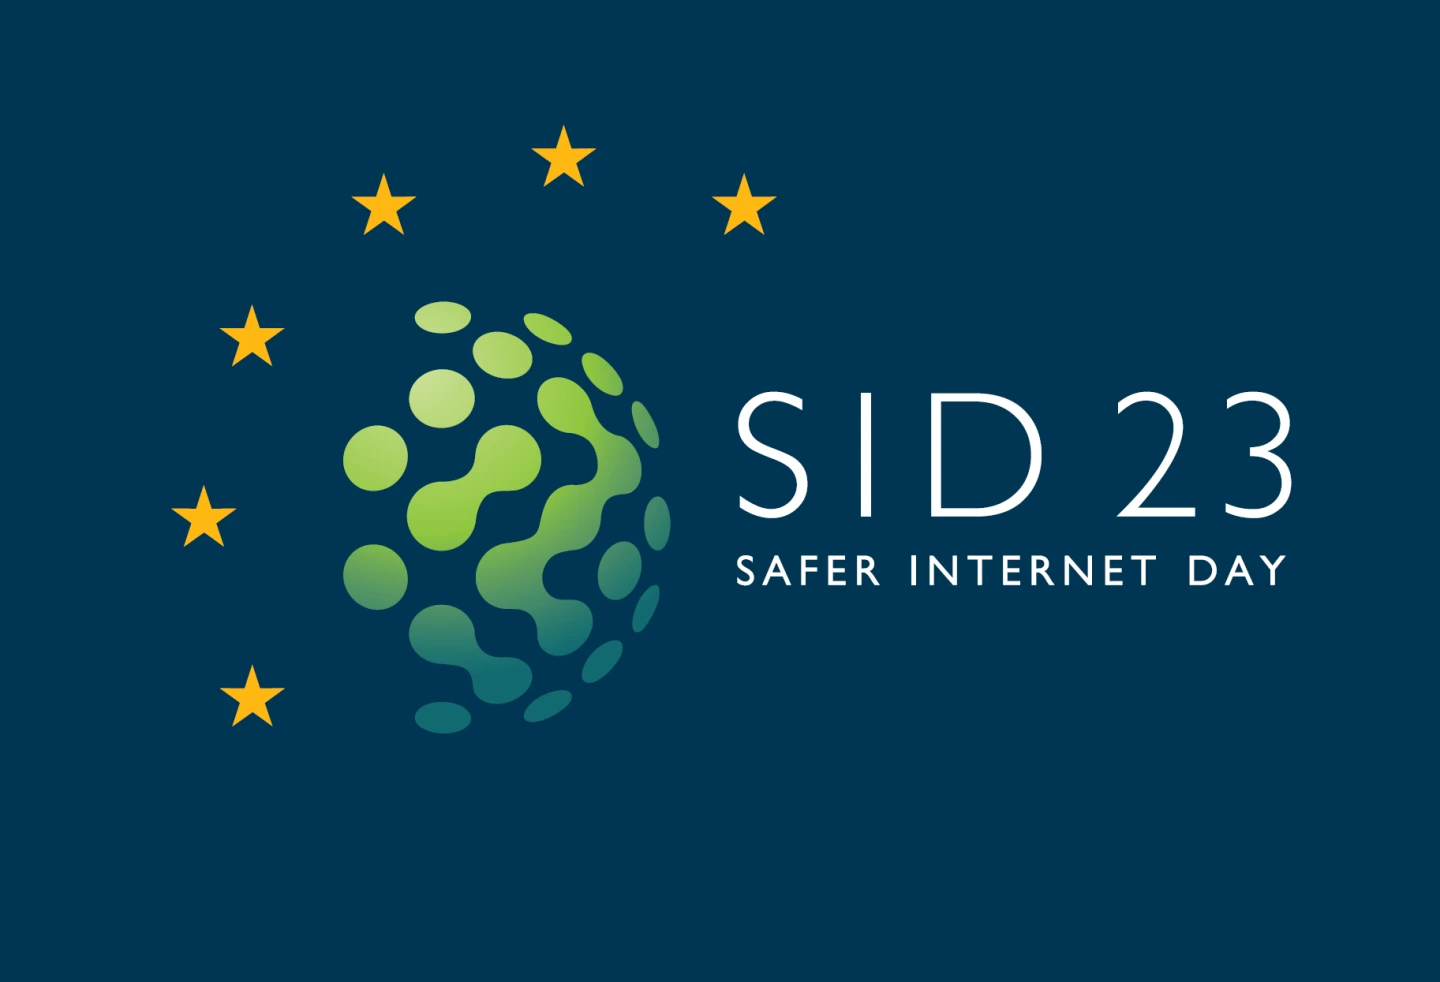 Logo des Safer Internet Days 23, eine stilisierte Weltkugel umrandet von sechs Sternen